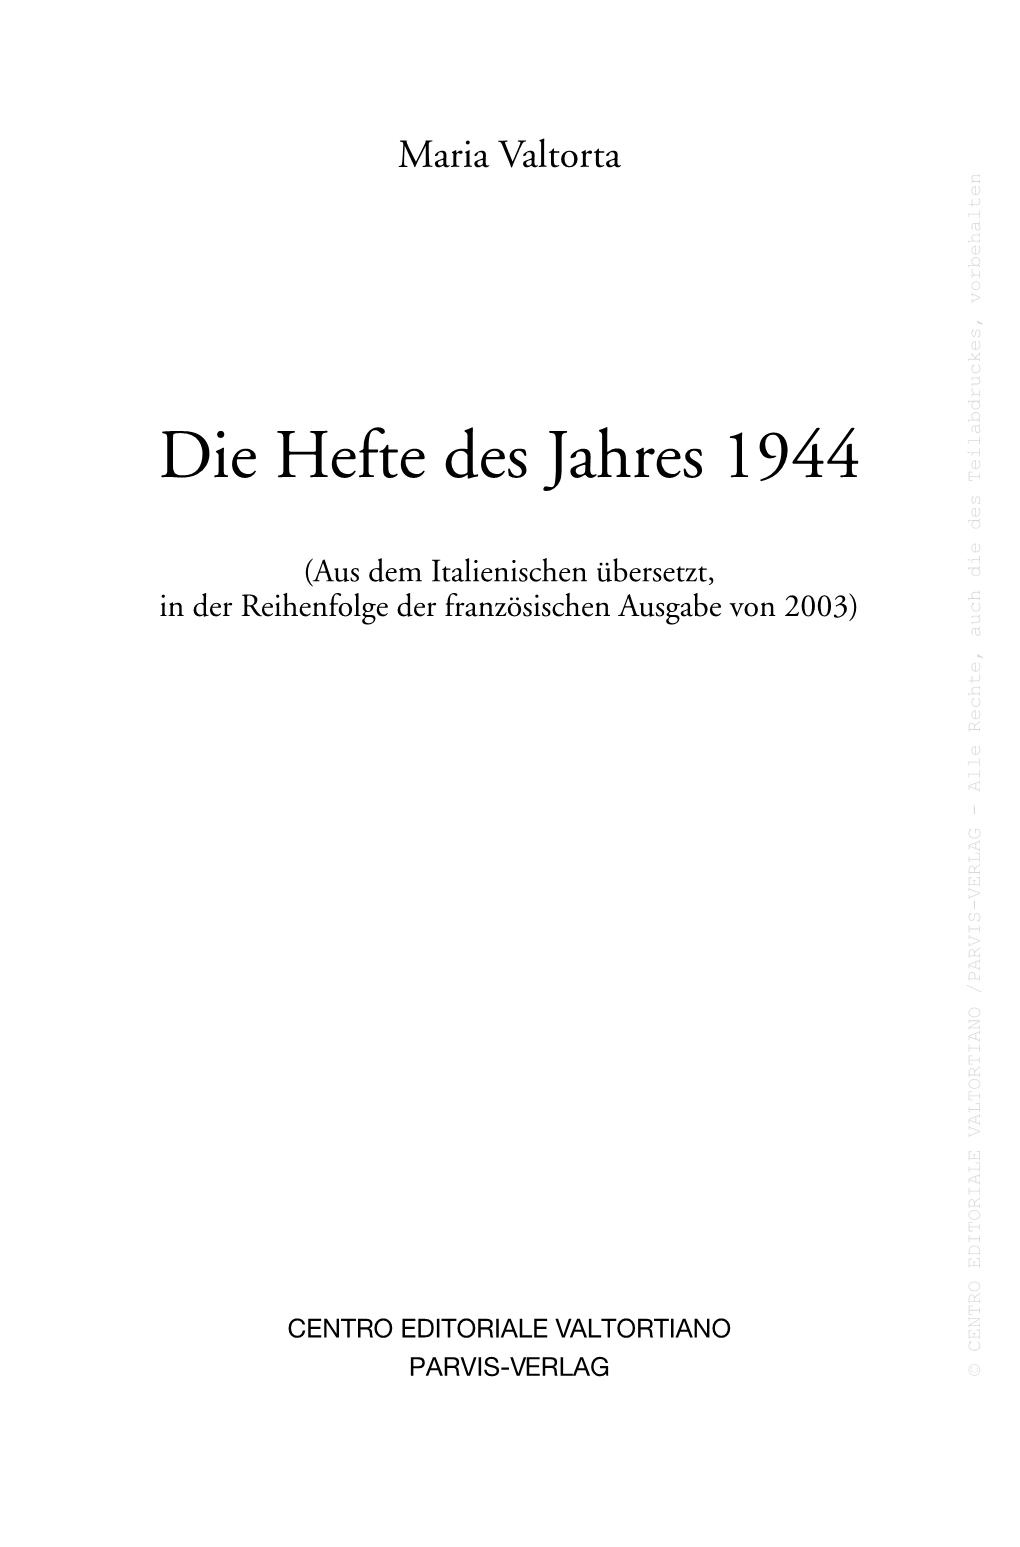 Die Hefte Des Jahres 1944 Teilabdruckes, Des